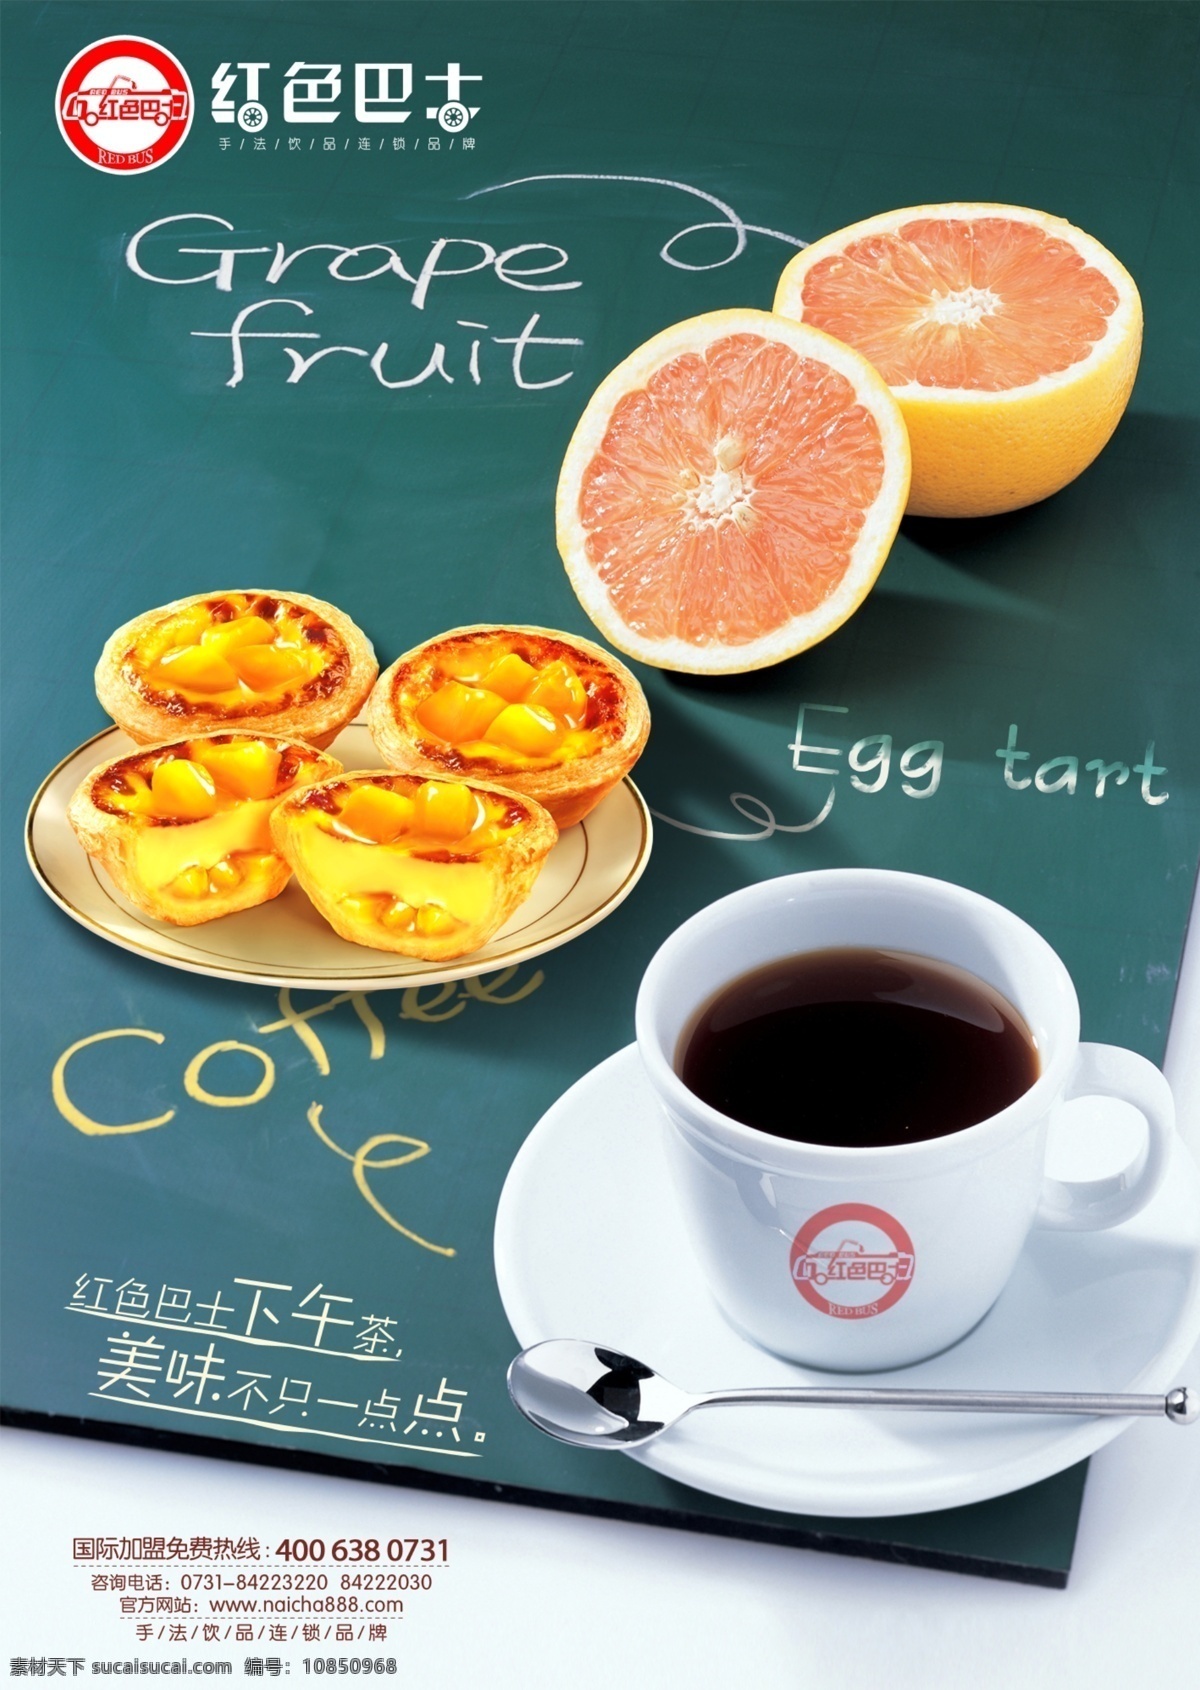 茶 橙子 蛋挞 广告设计模板 奶茶店海报 食品海报 下午茶 下午 茶素 材 模板下载 源文件 矢量图 日常生活